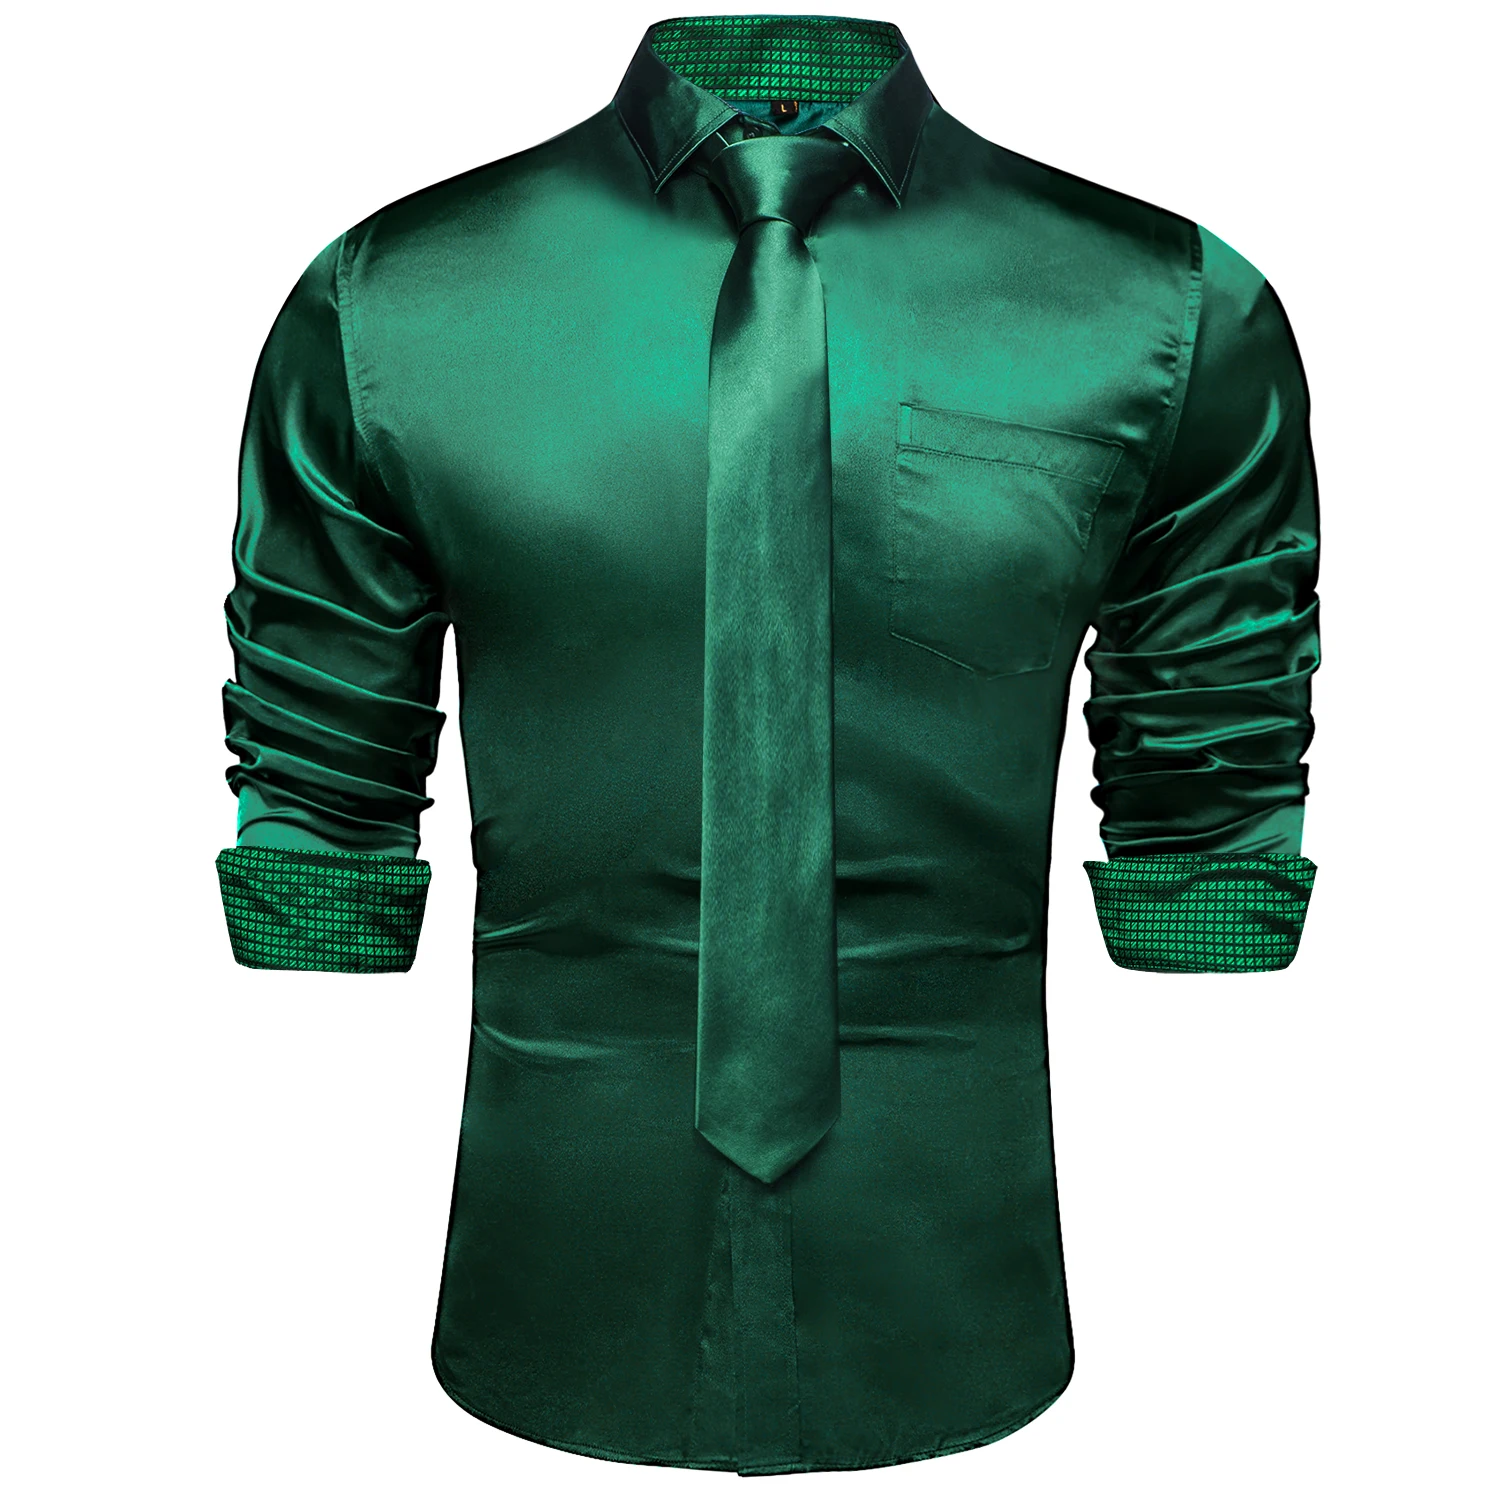 Tanie Zielony w kratę łączenie kontrastujące kolory koszule z długim rękawem sklep